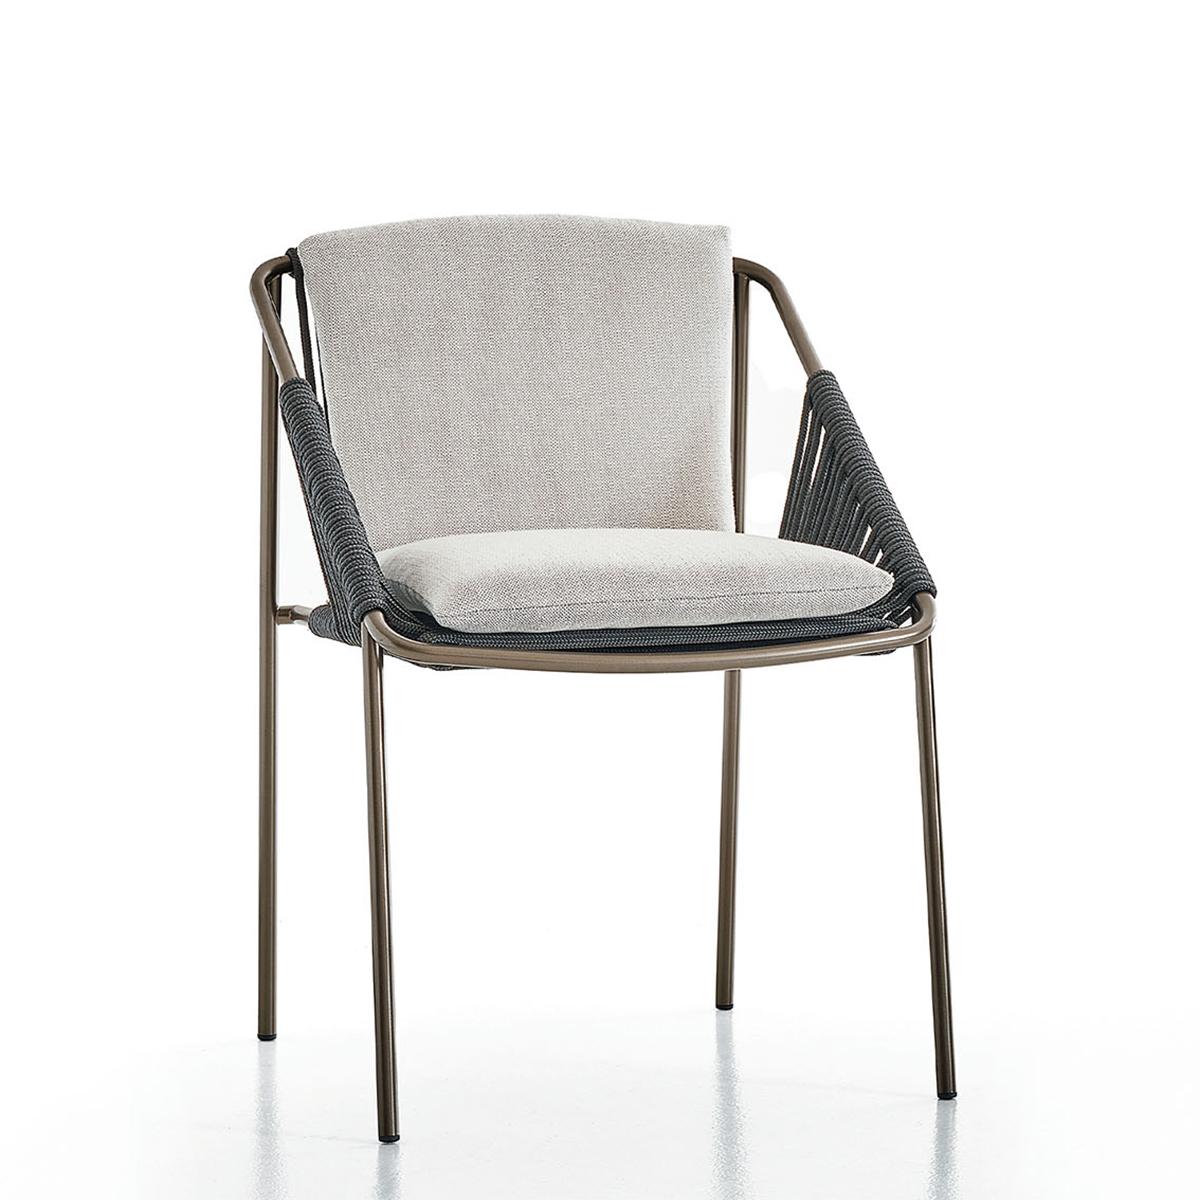 Stuhl Chelsy Outdoor mit Gestell aus rostfreiem Stahl
in bronzefarbener Ausführung, mit Sitzkissen und Rückenlehne gepolstert
und mit hochwertigem Outdoor-Stoff bezogen. Rückenlehne und 
Armlehnen aus geflochtenem grauem Seil